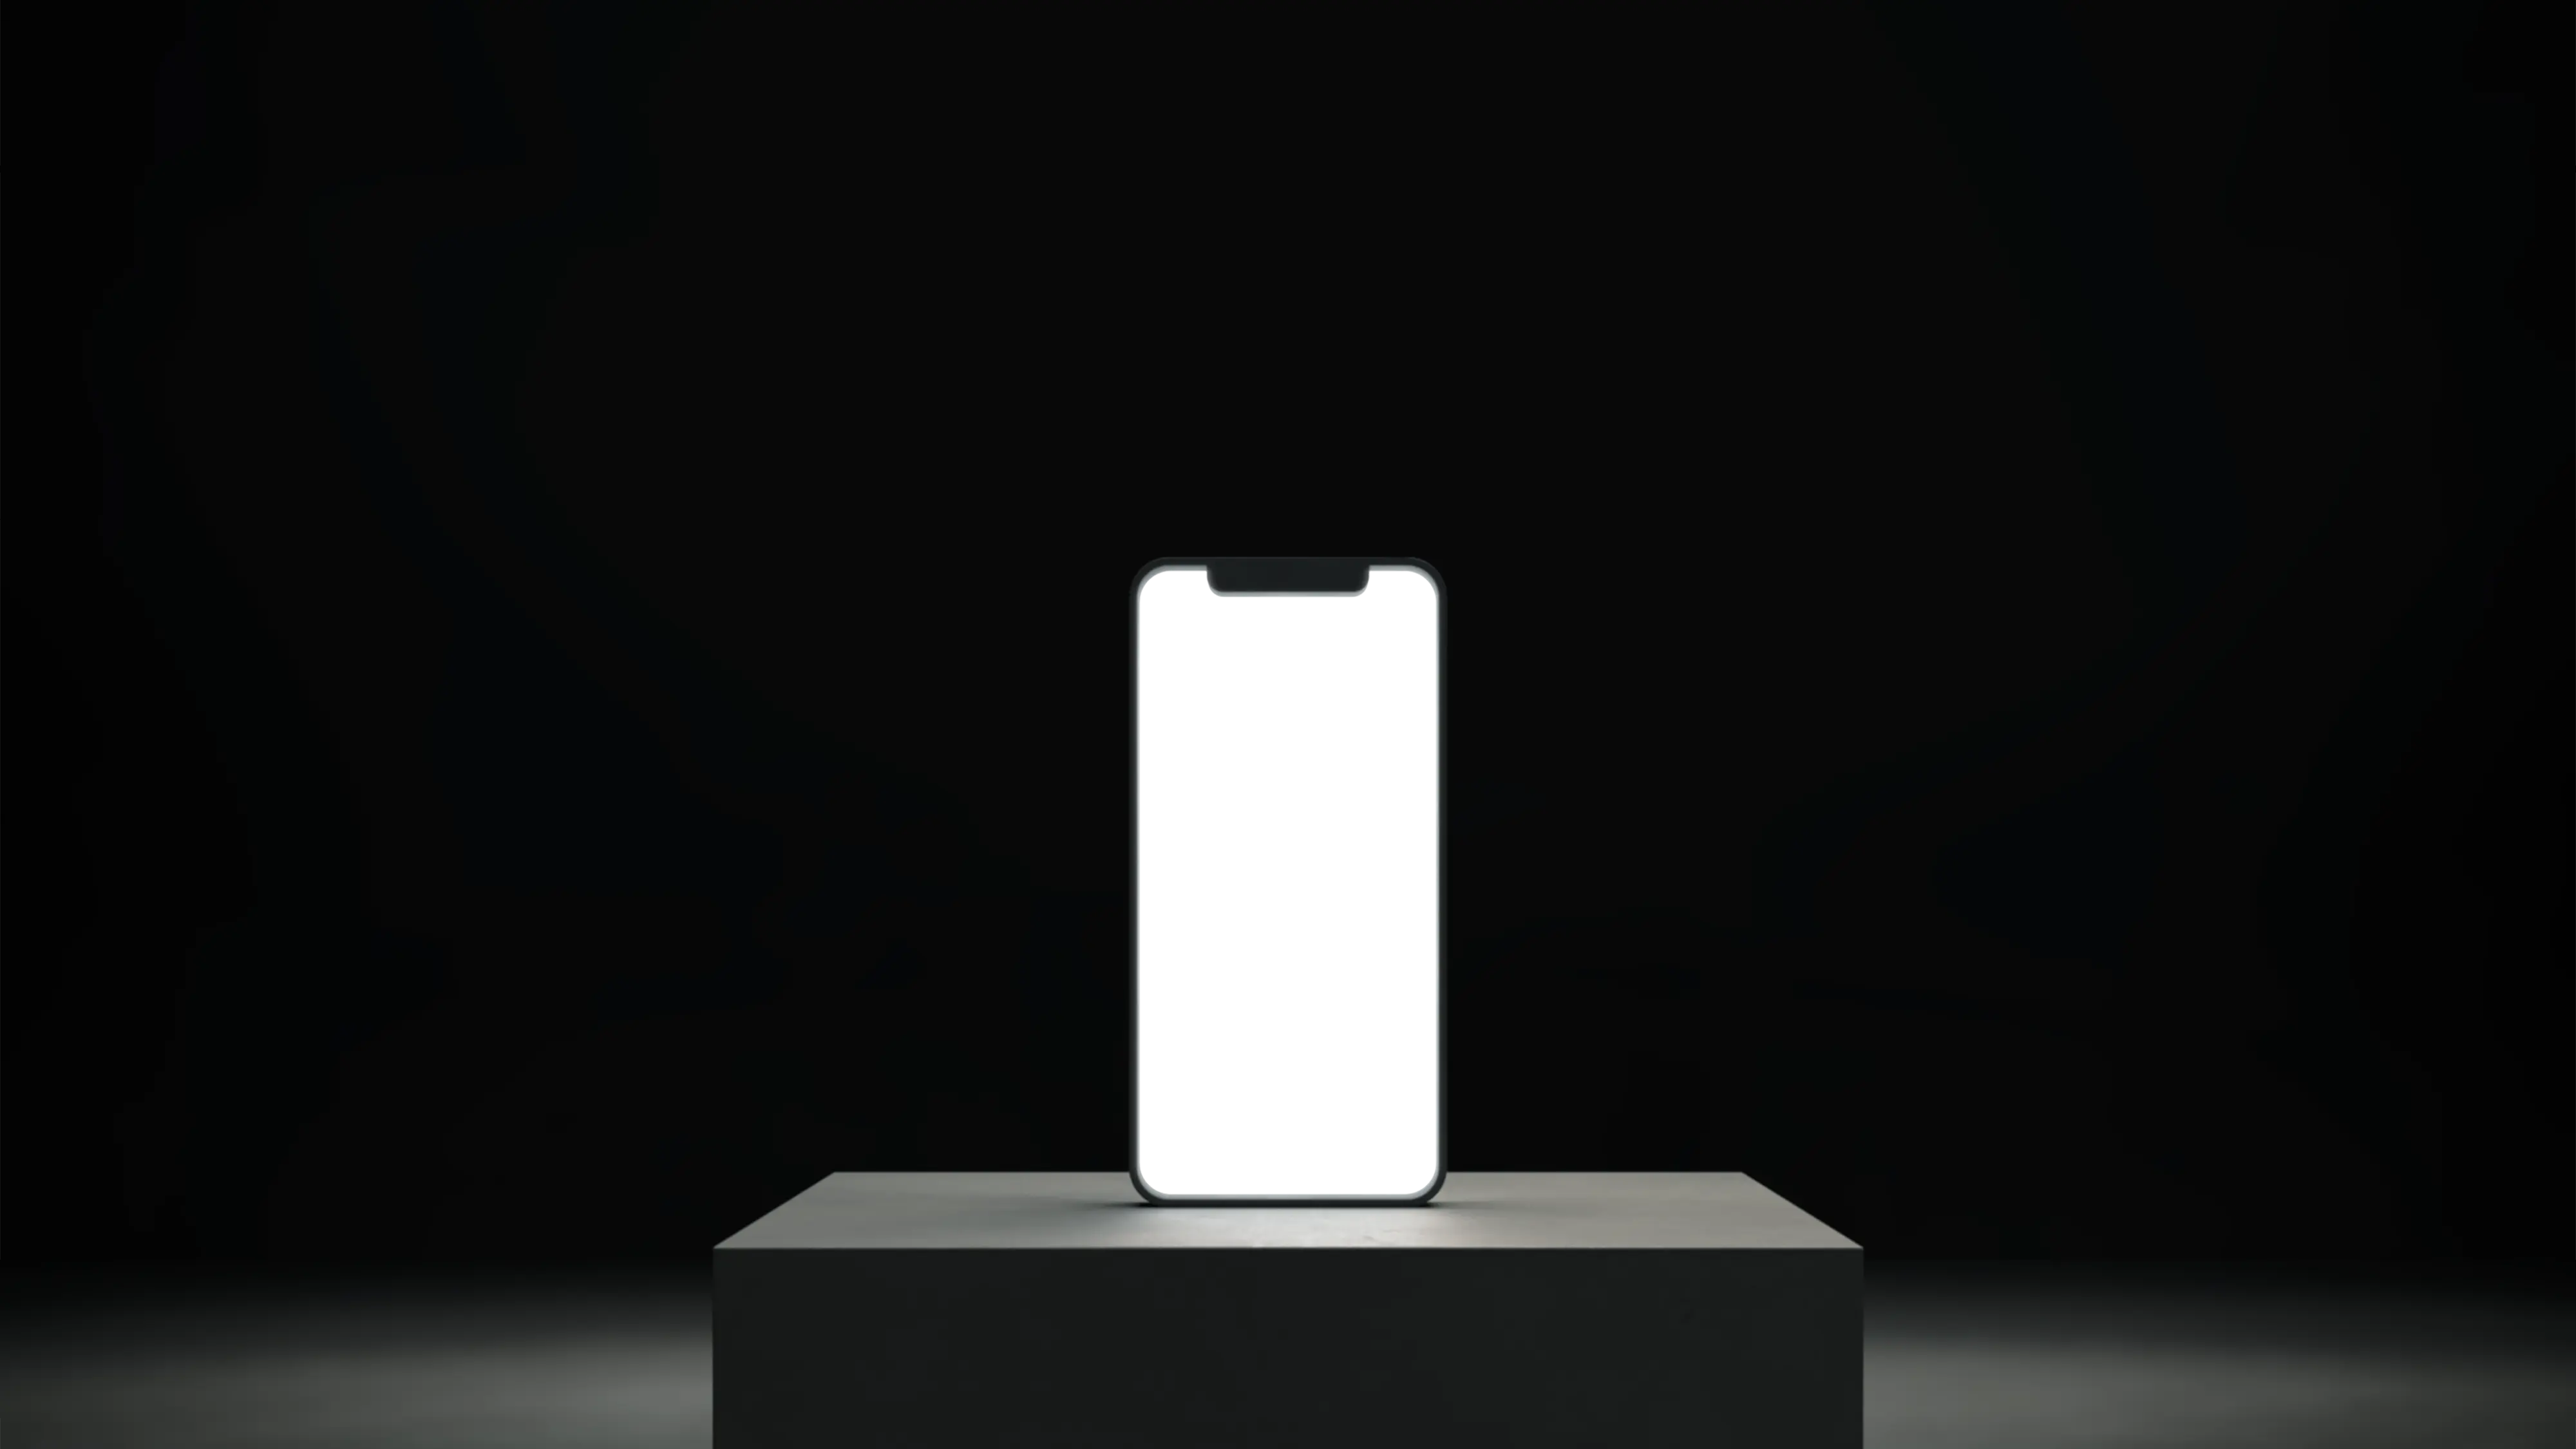 Smartphone sur un piédestal avec un écran blanc allumé.